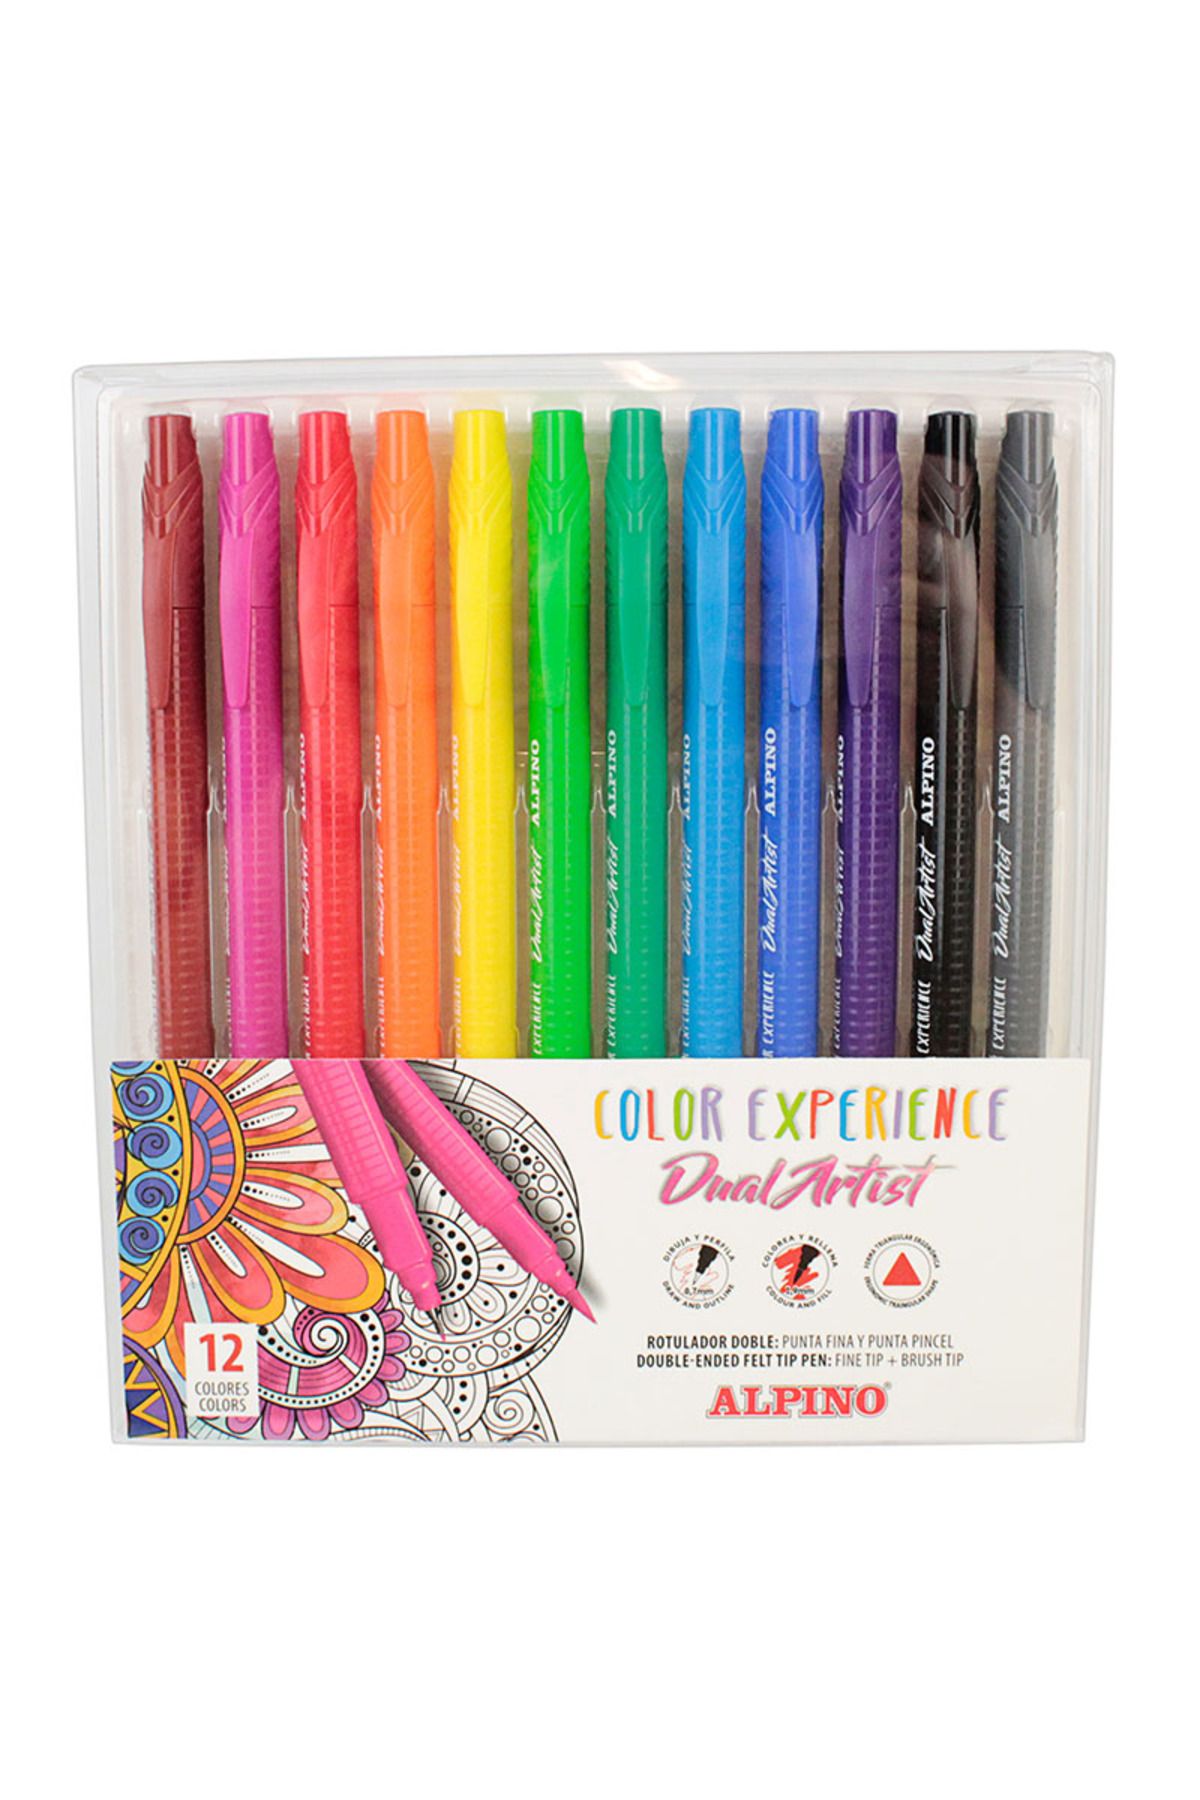 Alpino Ar-000186 Çift Yönlü Dual Artıst12 Renk Keçeli Kalem